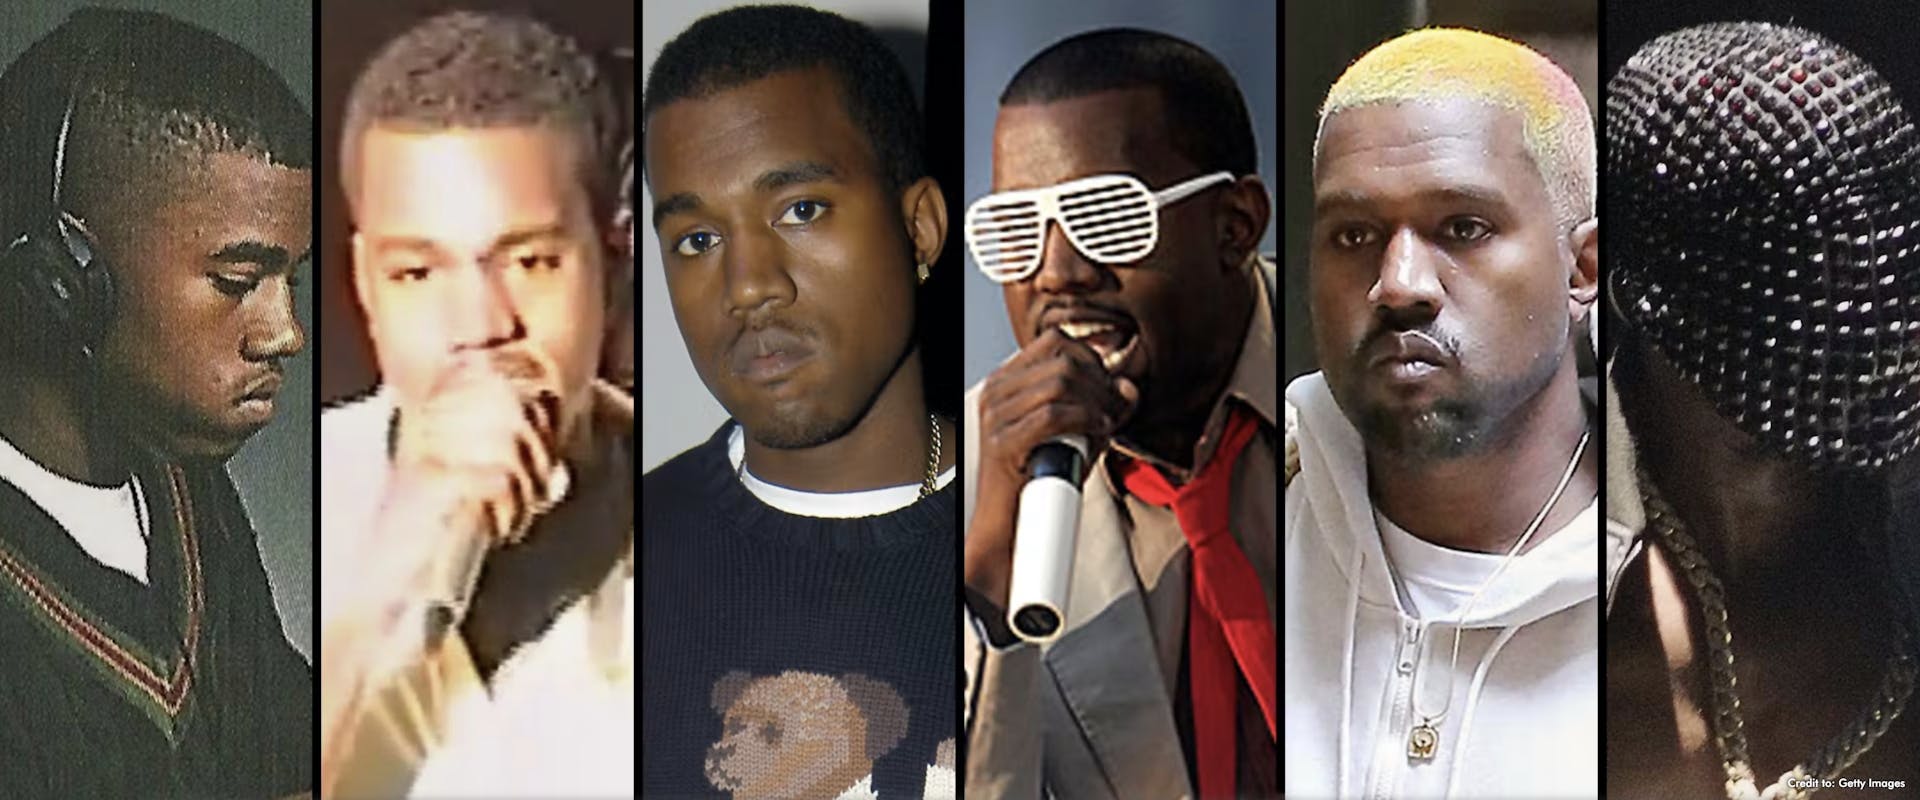 Kanye West's Influence on Fashion